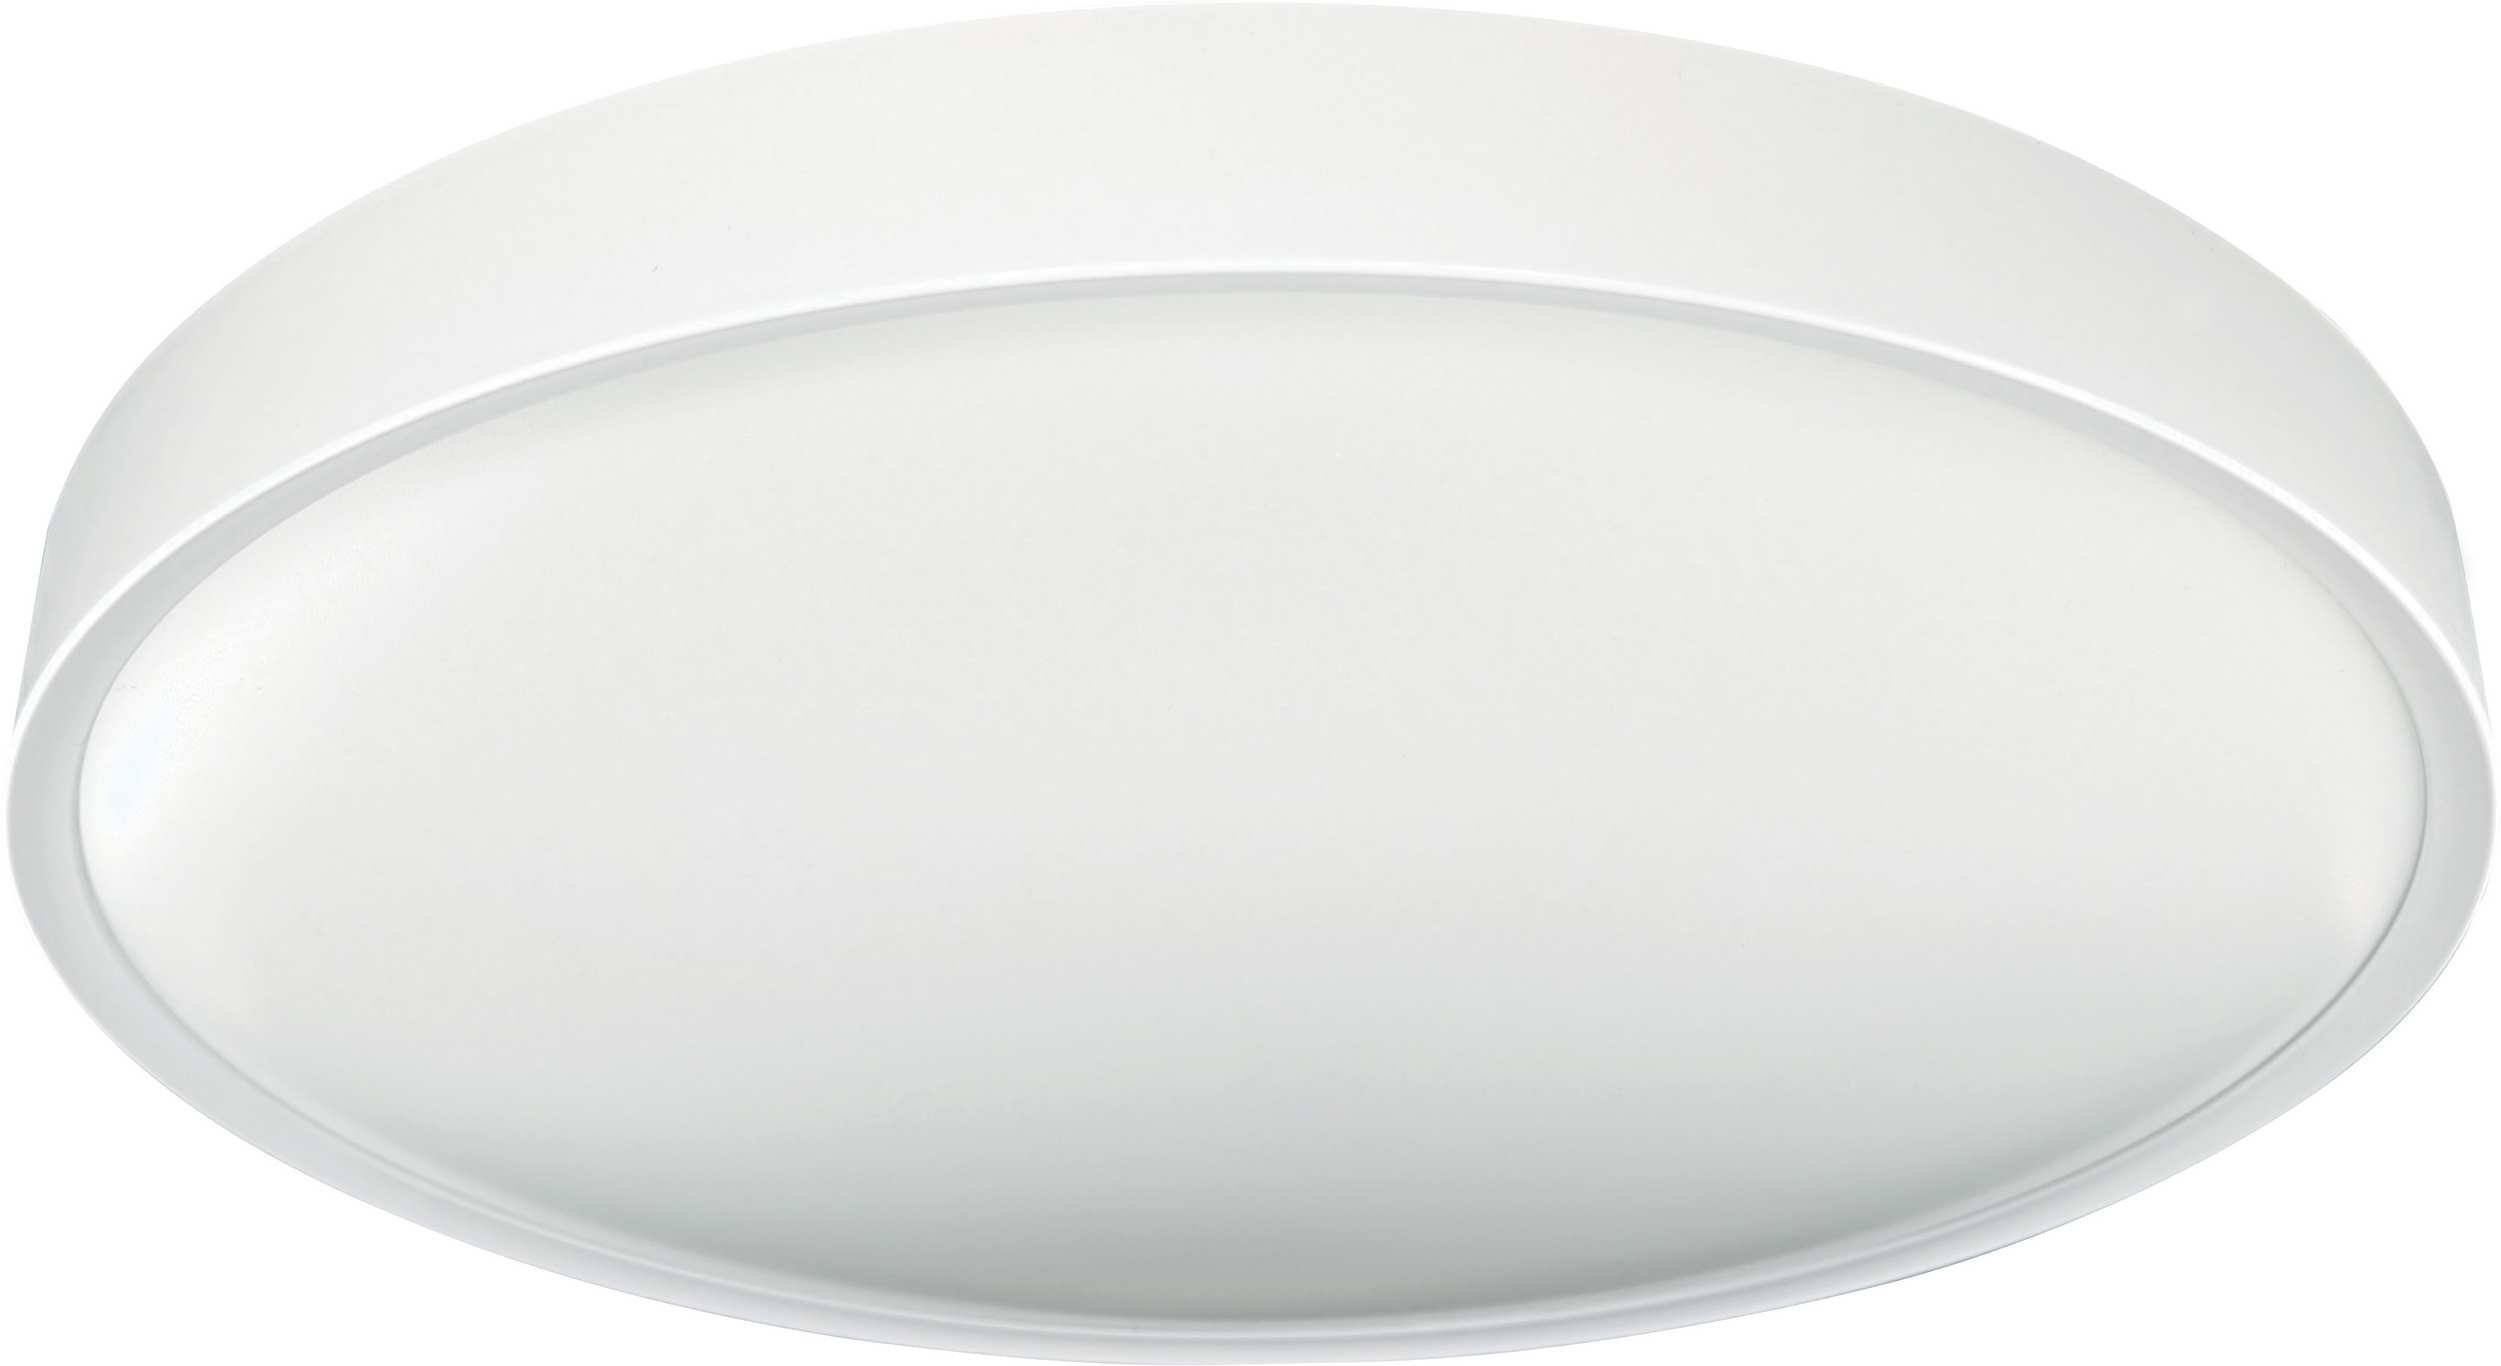 LED stropní svítidlo SAMER White 40W NW, 4000K, 3200lm, IP20, Greenlux GXLS366 - zvìtšit obrázek